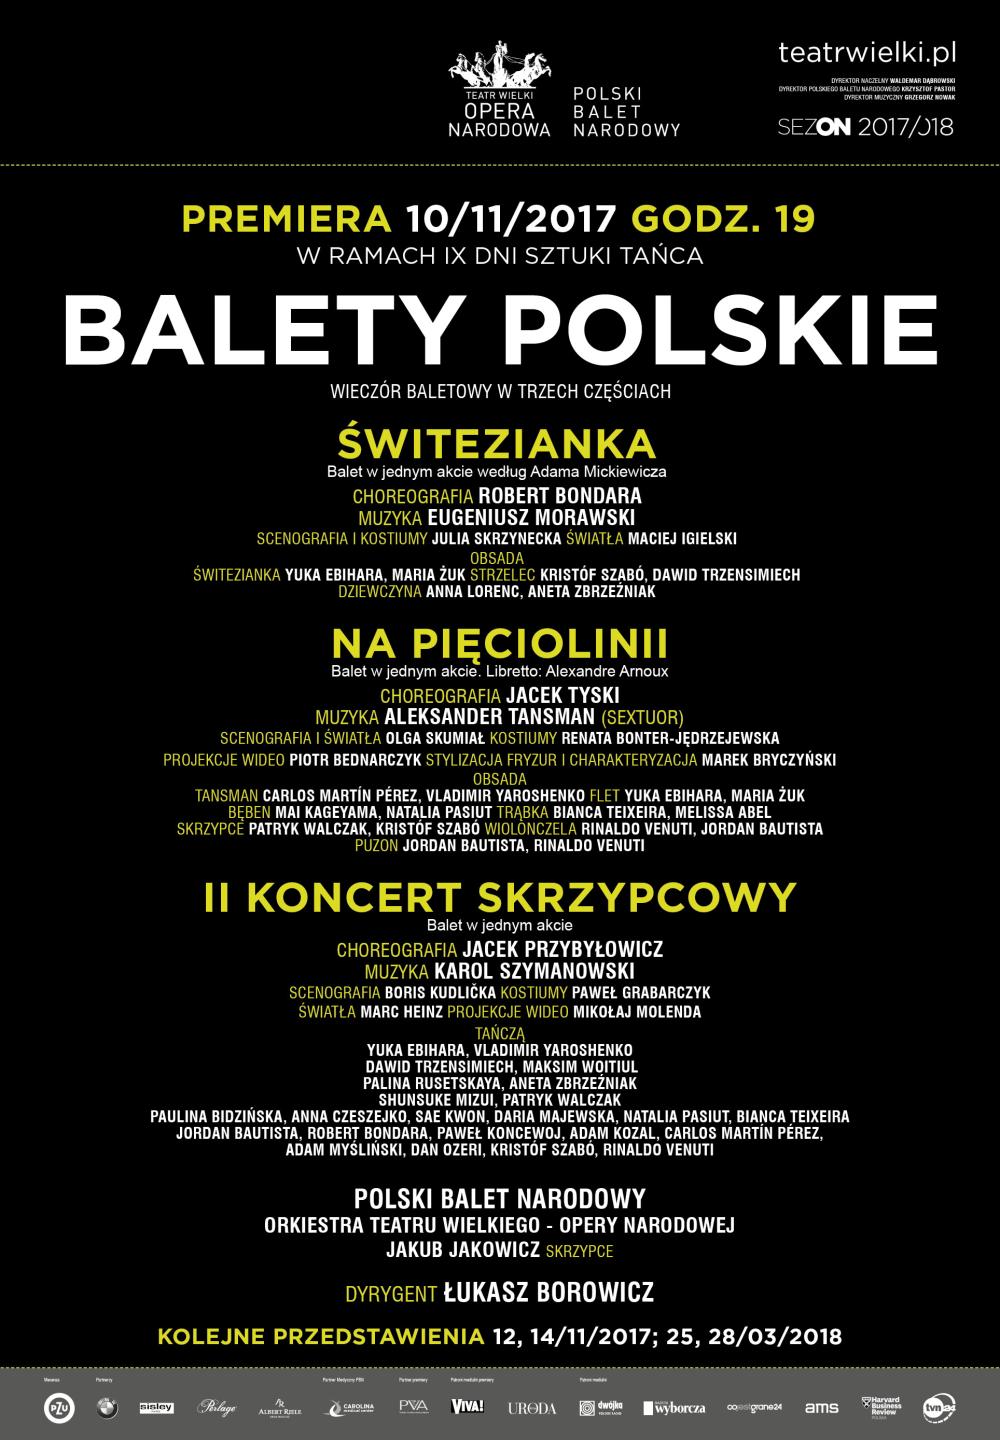 Afisz Wieczoru baletowego w trzech częściach "Balety polskie" premiera 2017-11-10 w ramach IX Dni Sztuki Tańca